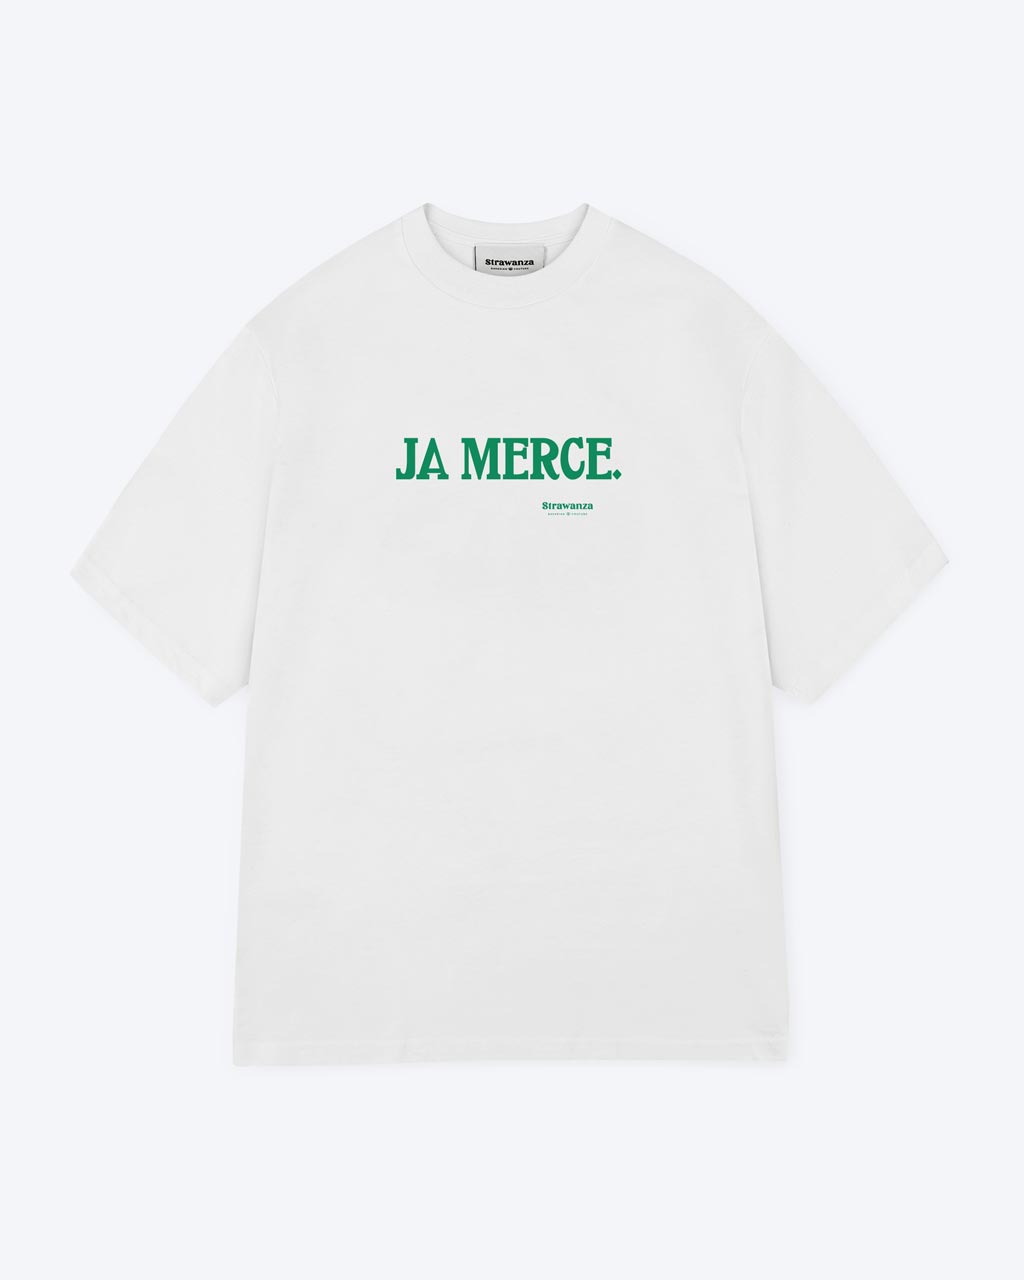 Ein weißes T-Shirt mit einem dunkelgrünen 